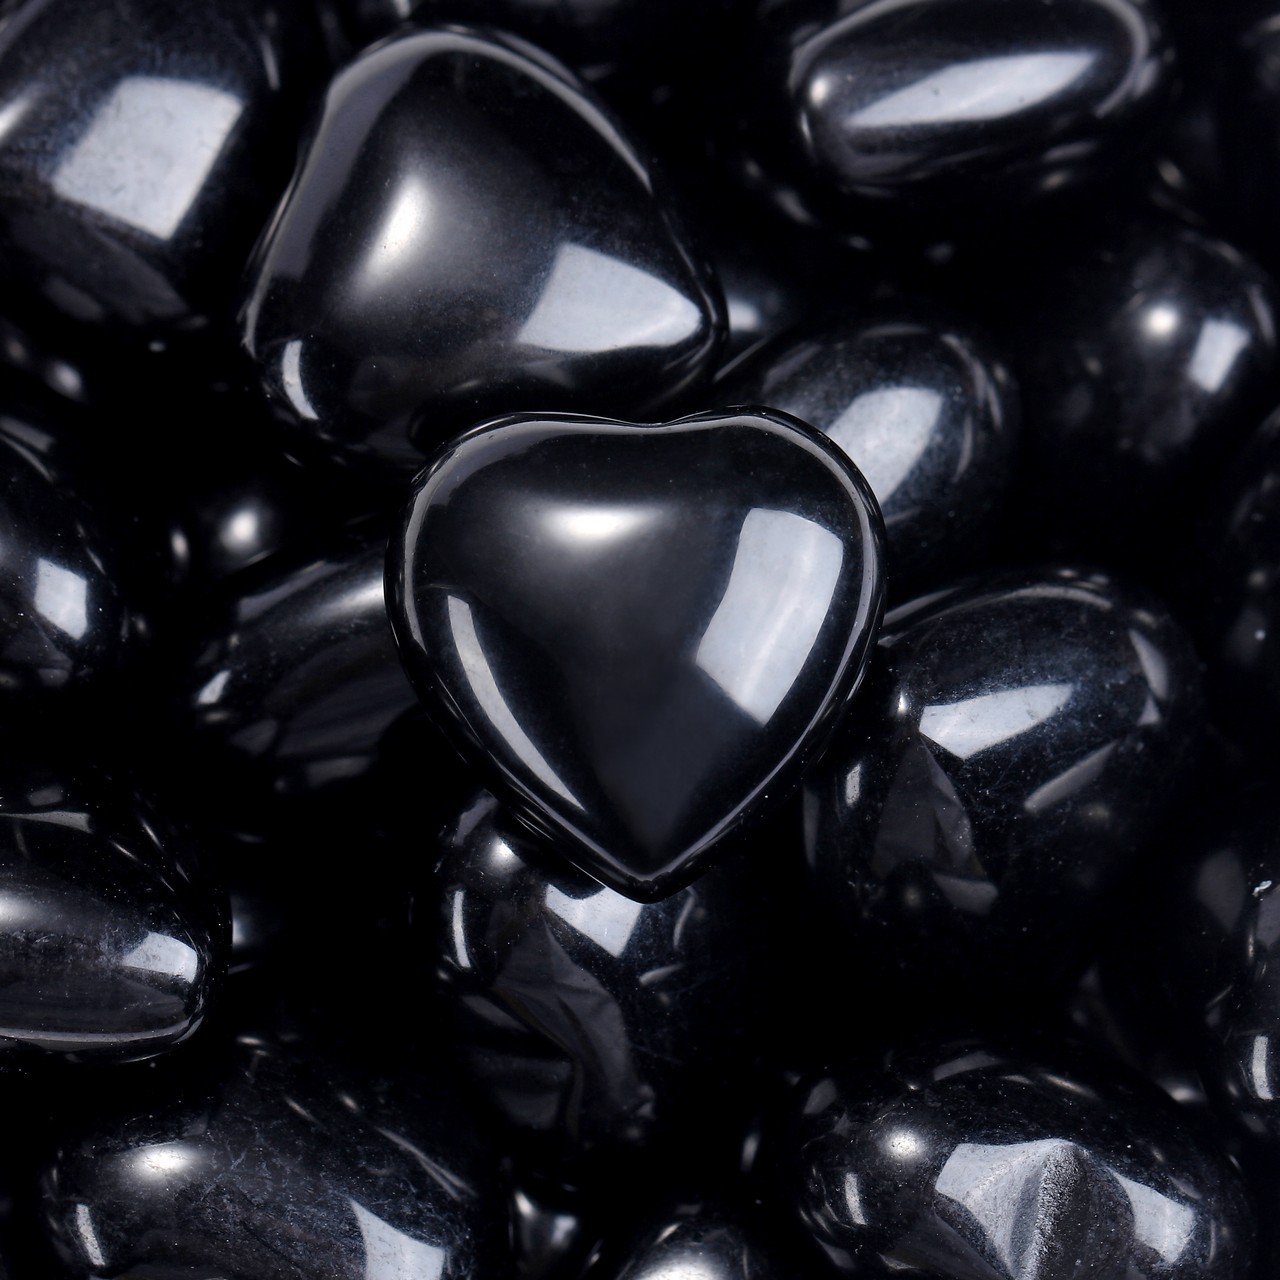 7:Μαύρο Obsidian